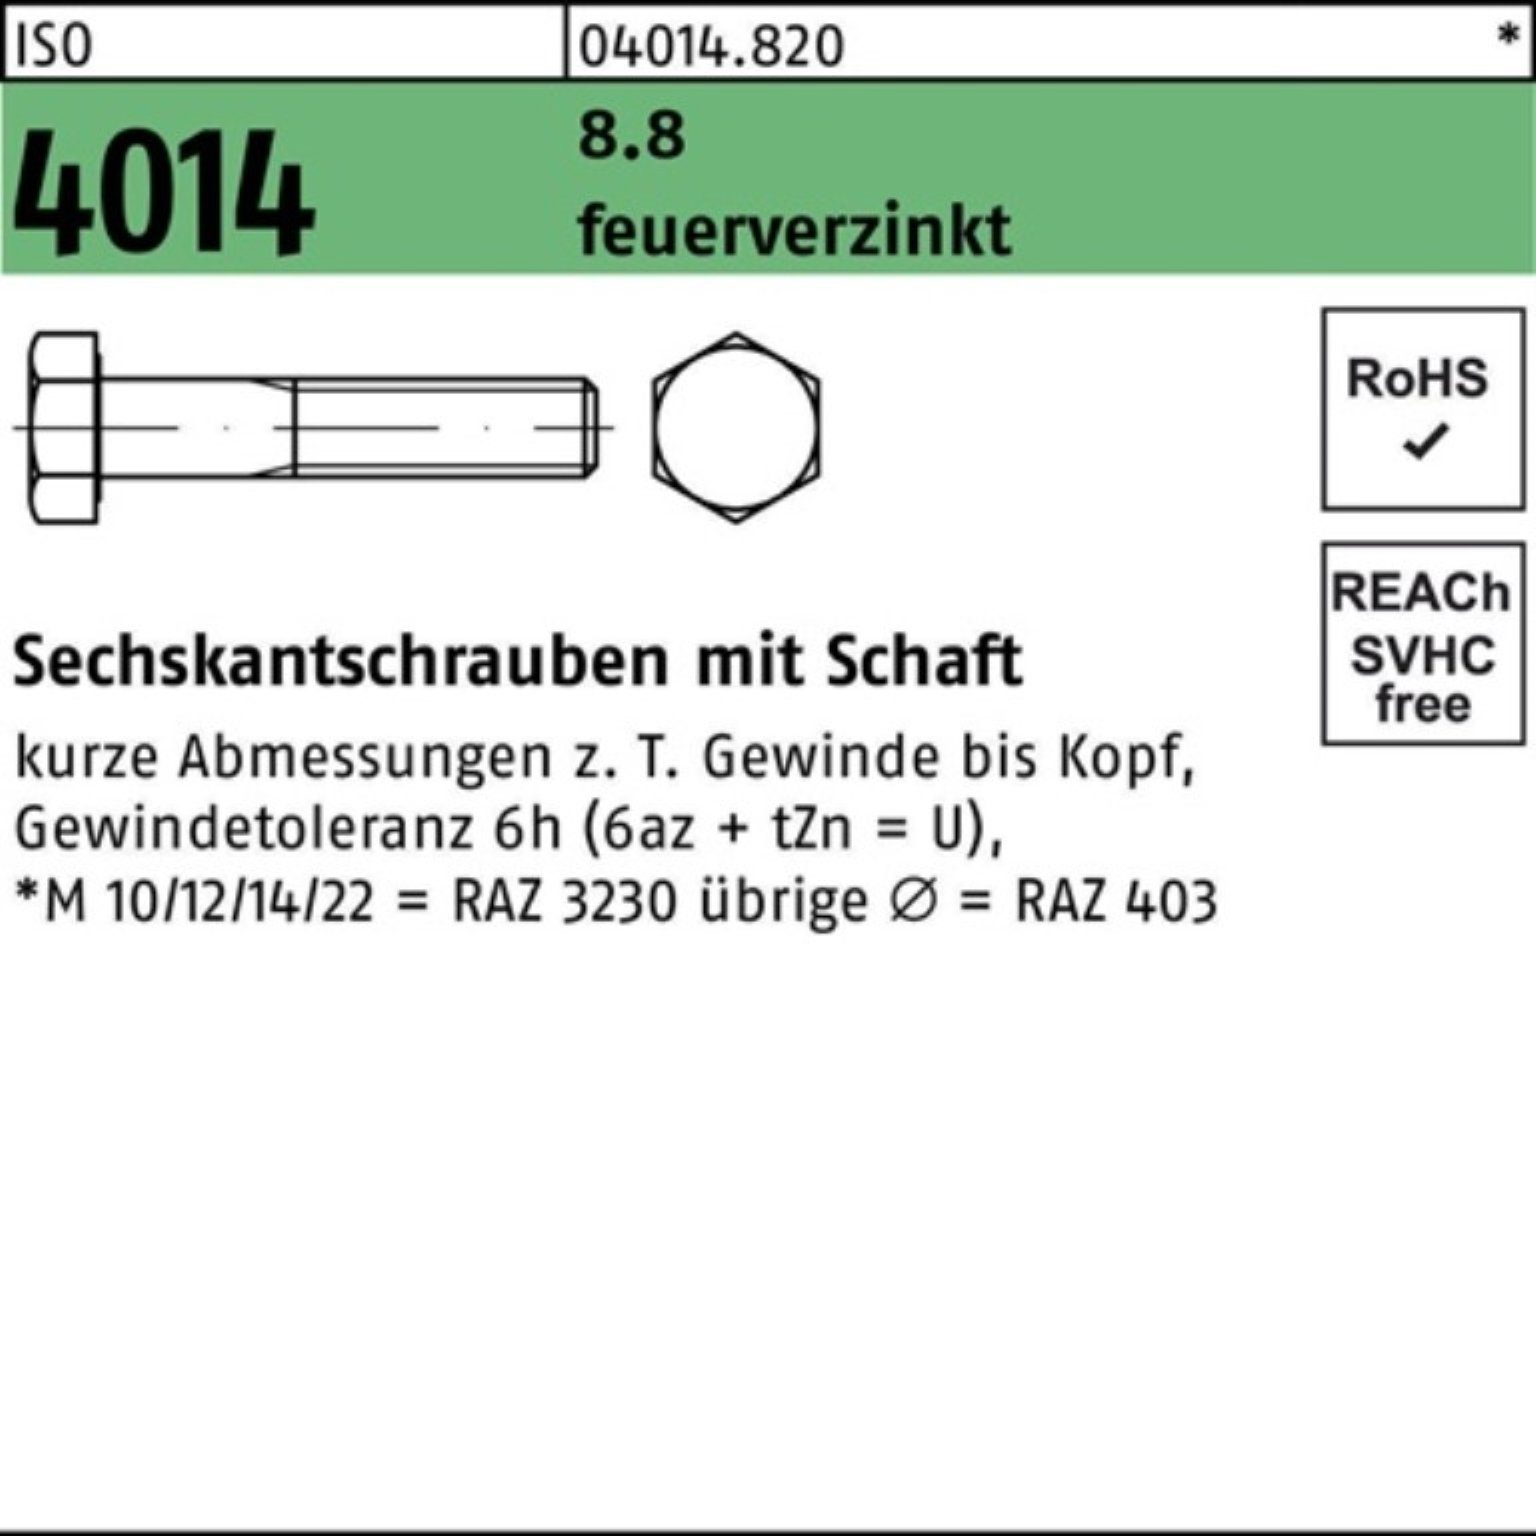 Bufab Sechskantschraube 100er Pack Sechskantschraube ISO 4014 Schaft M16x 80 8.8 feuerverz. 25